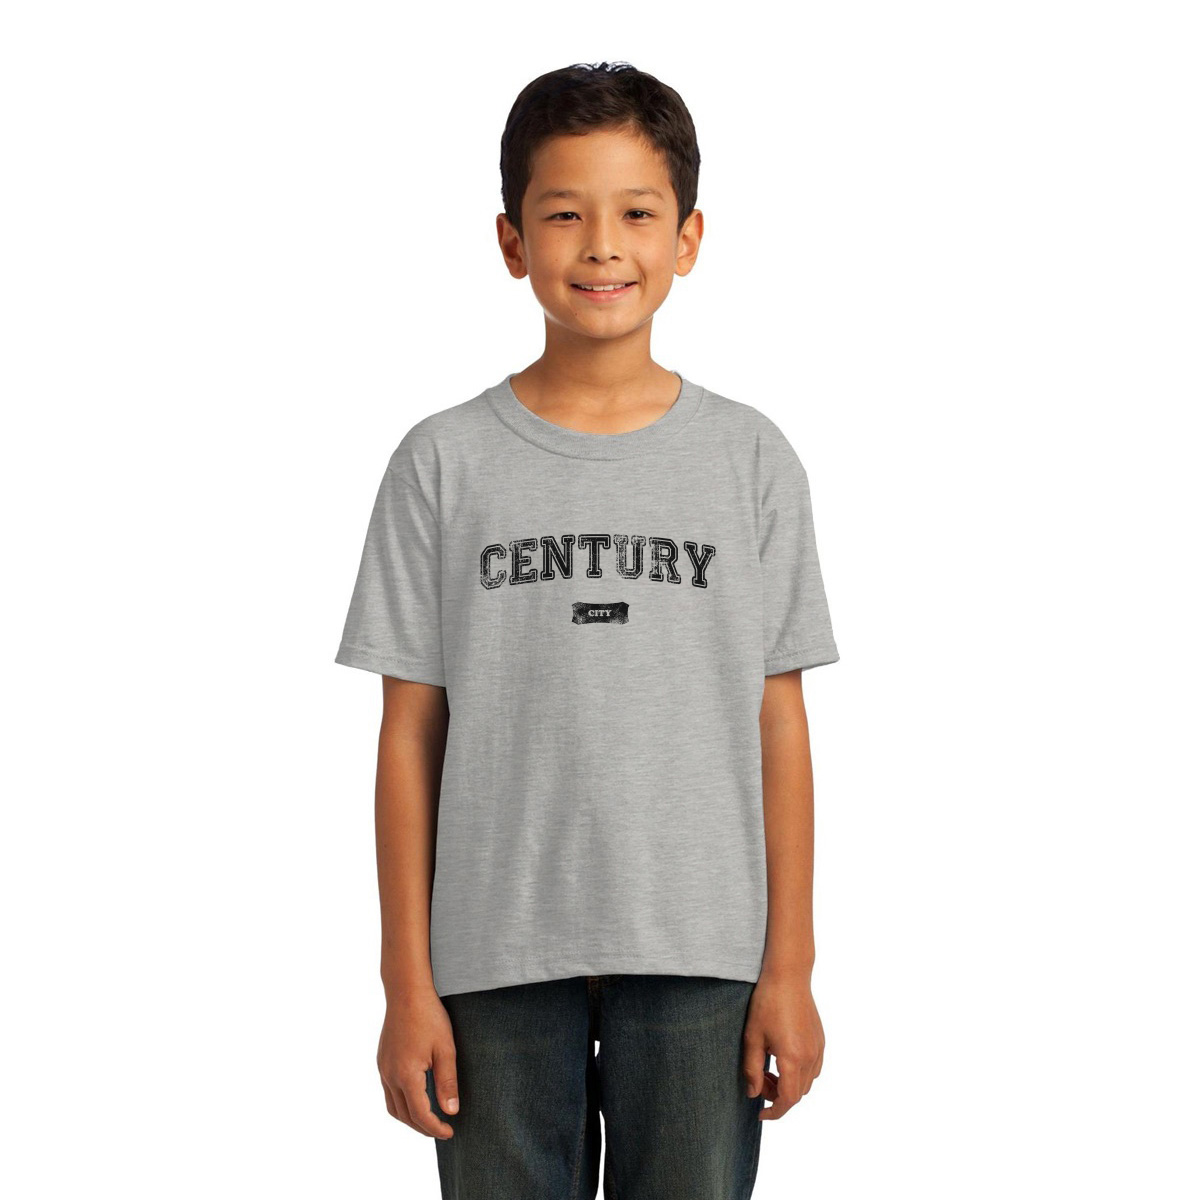 Century City Represent Kids T-shirt | Gray